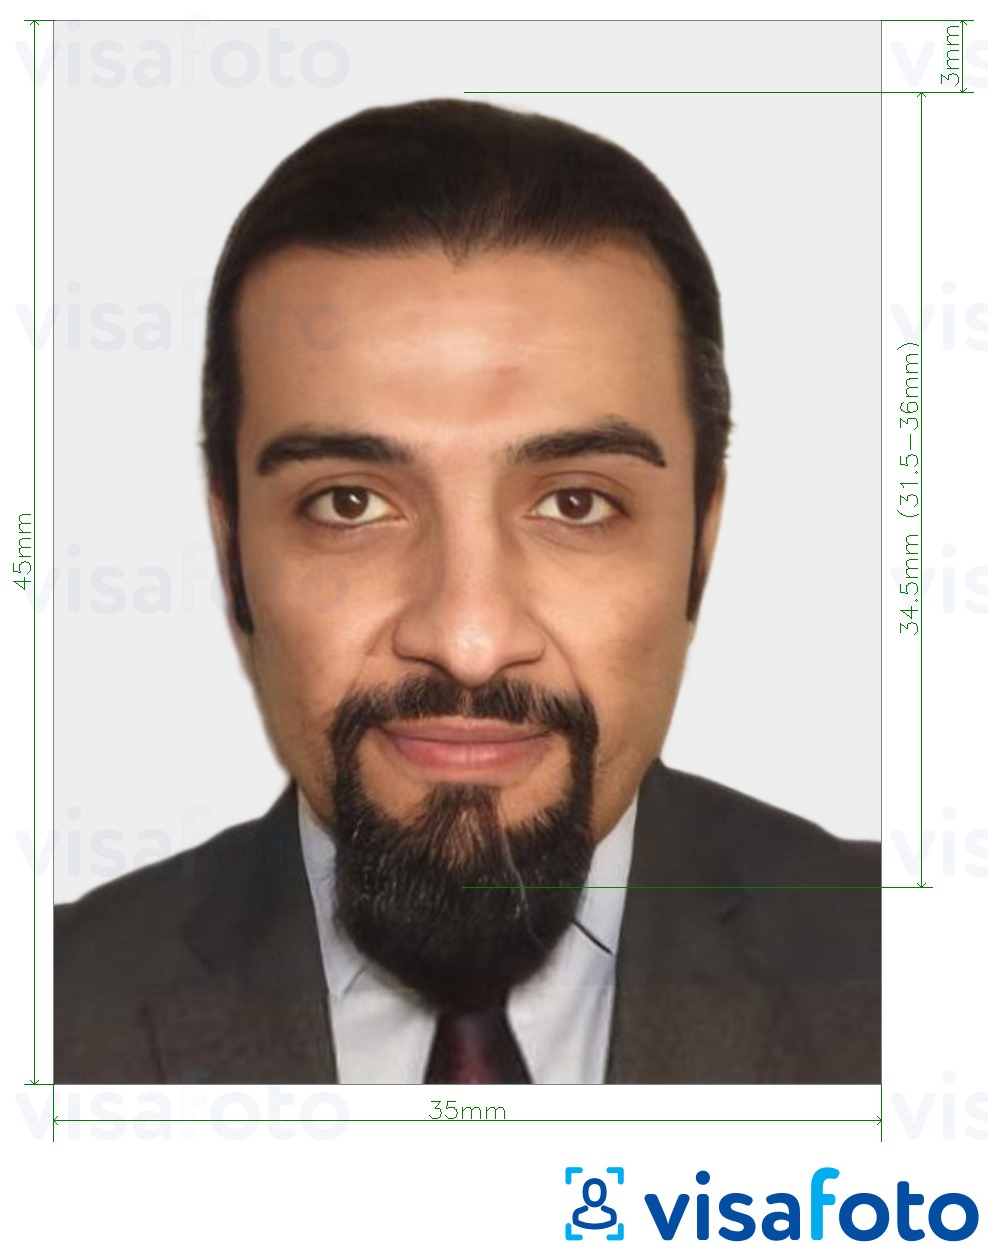 Primer fotografije za Mavretanski potni list 35x45 mm (3,5x4,5 cm) z natančno specifikacijo velikosti